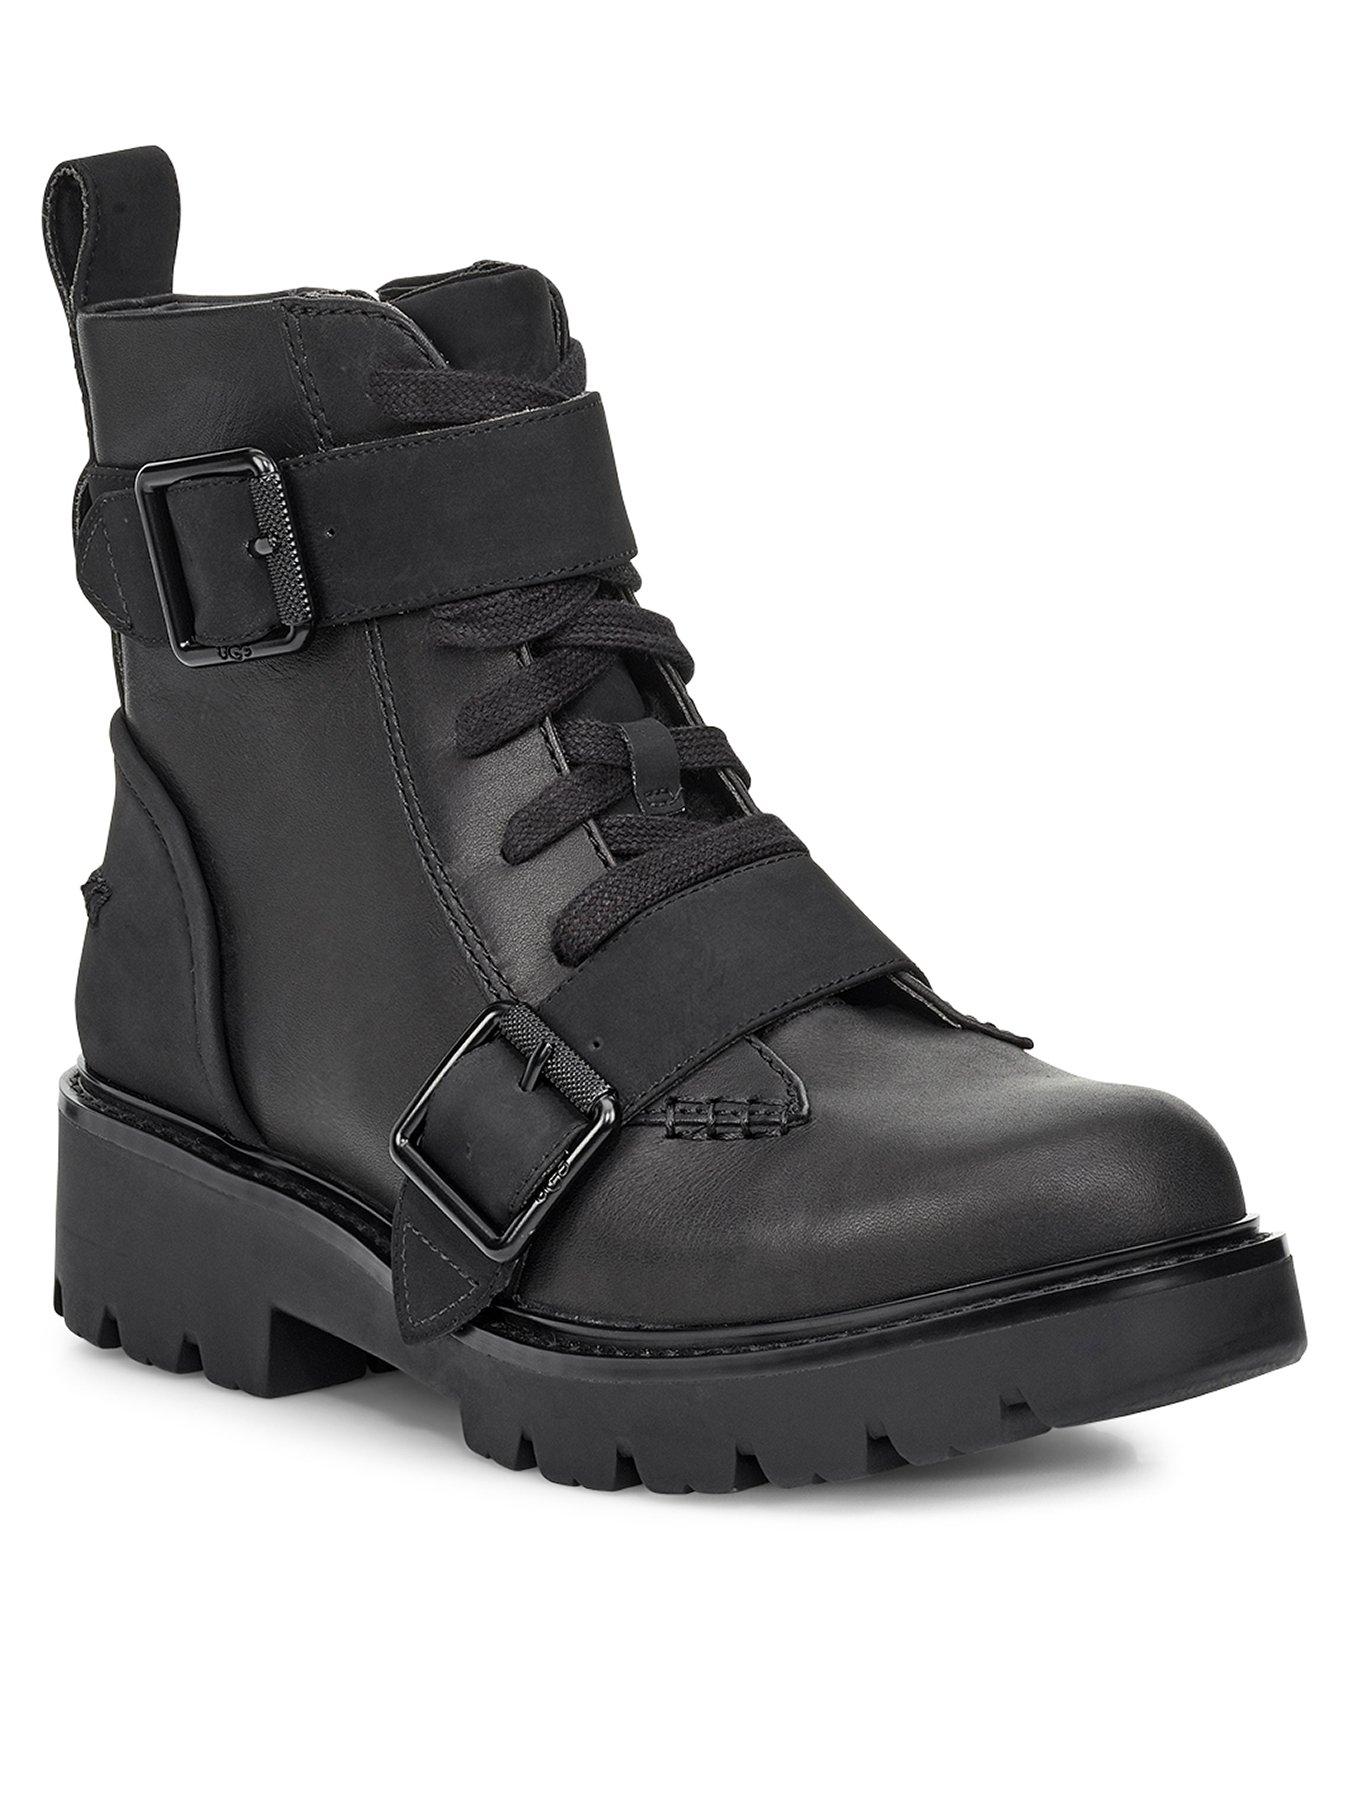 black ugg boots uk